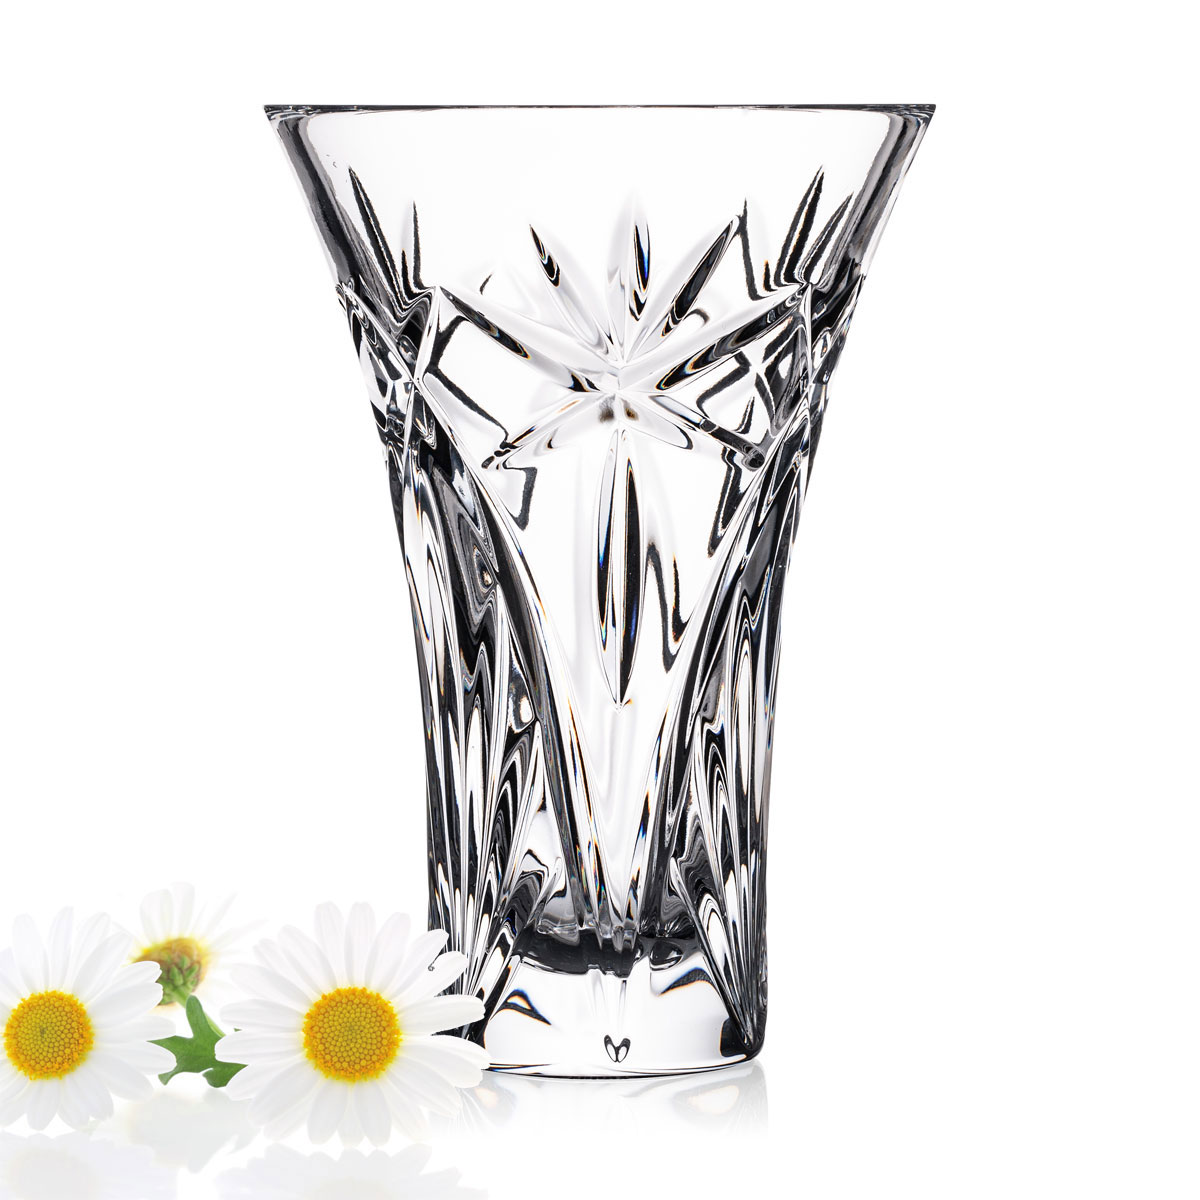 Waterford Crystal Eleanor 6" Vase